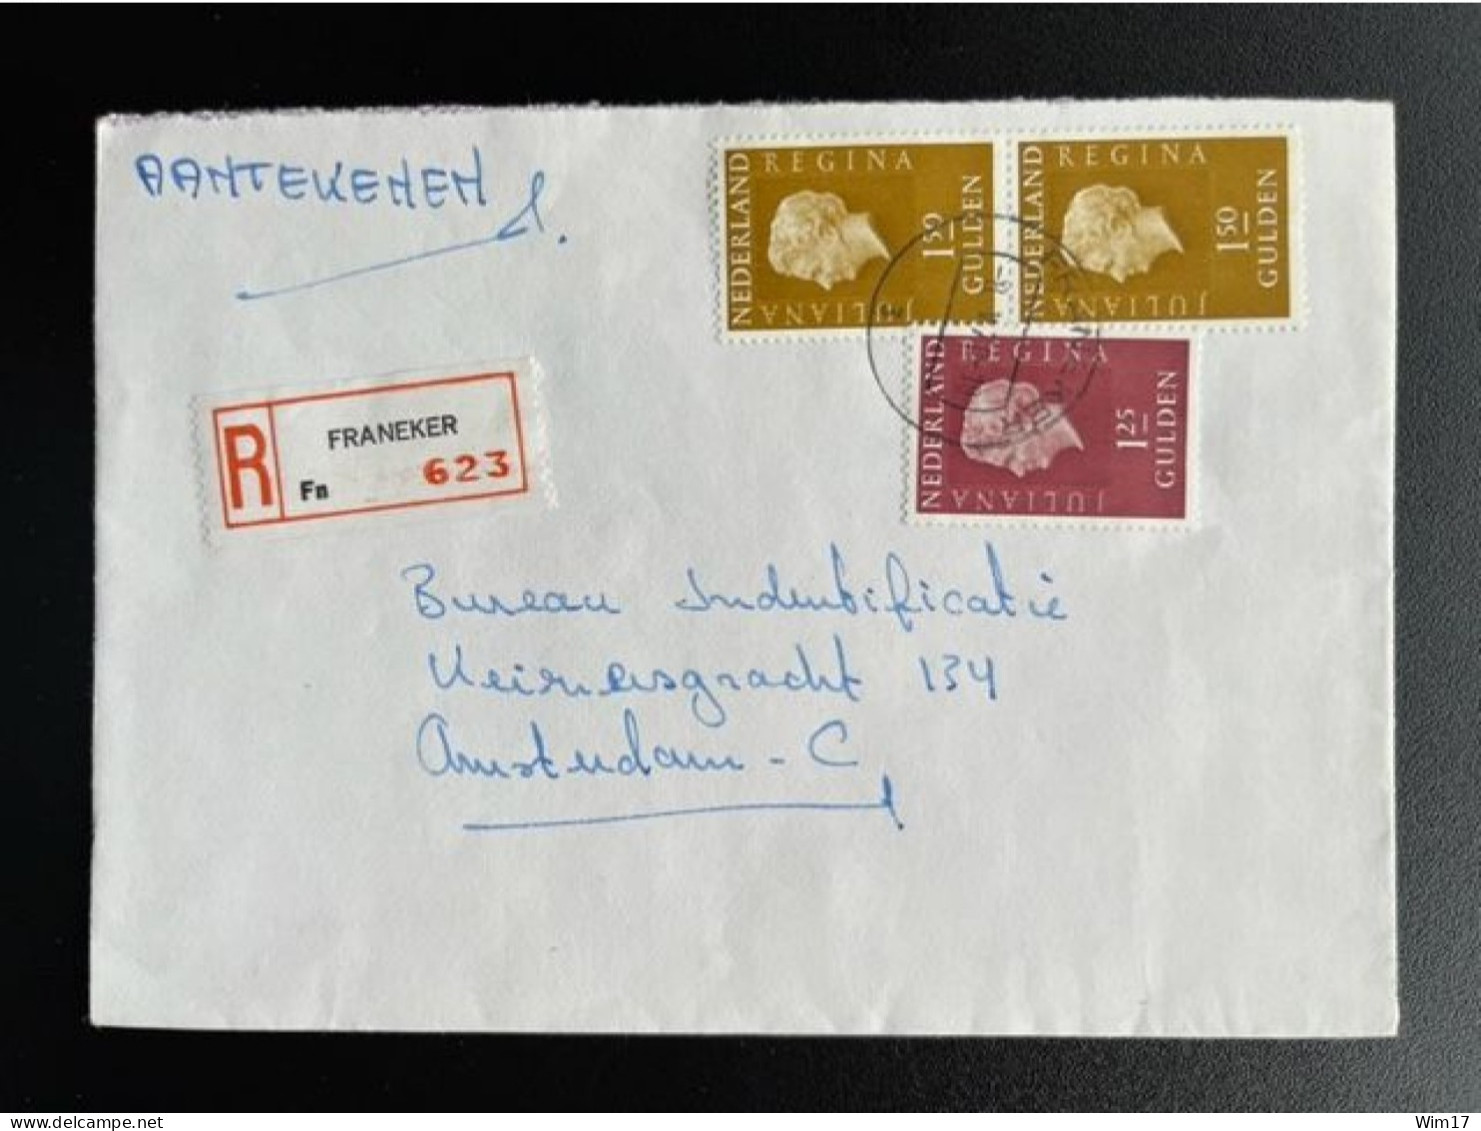 NETHERLANDS 1978 REGISTERED LETTER FRANEKER TO AMSTERDAM 08-05-1978 NEDERLAND AANGETEKEND - Briefe U. Dokumente